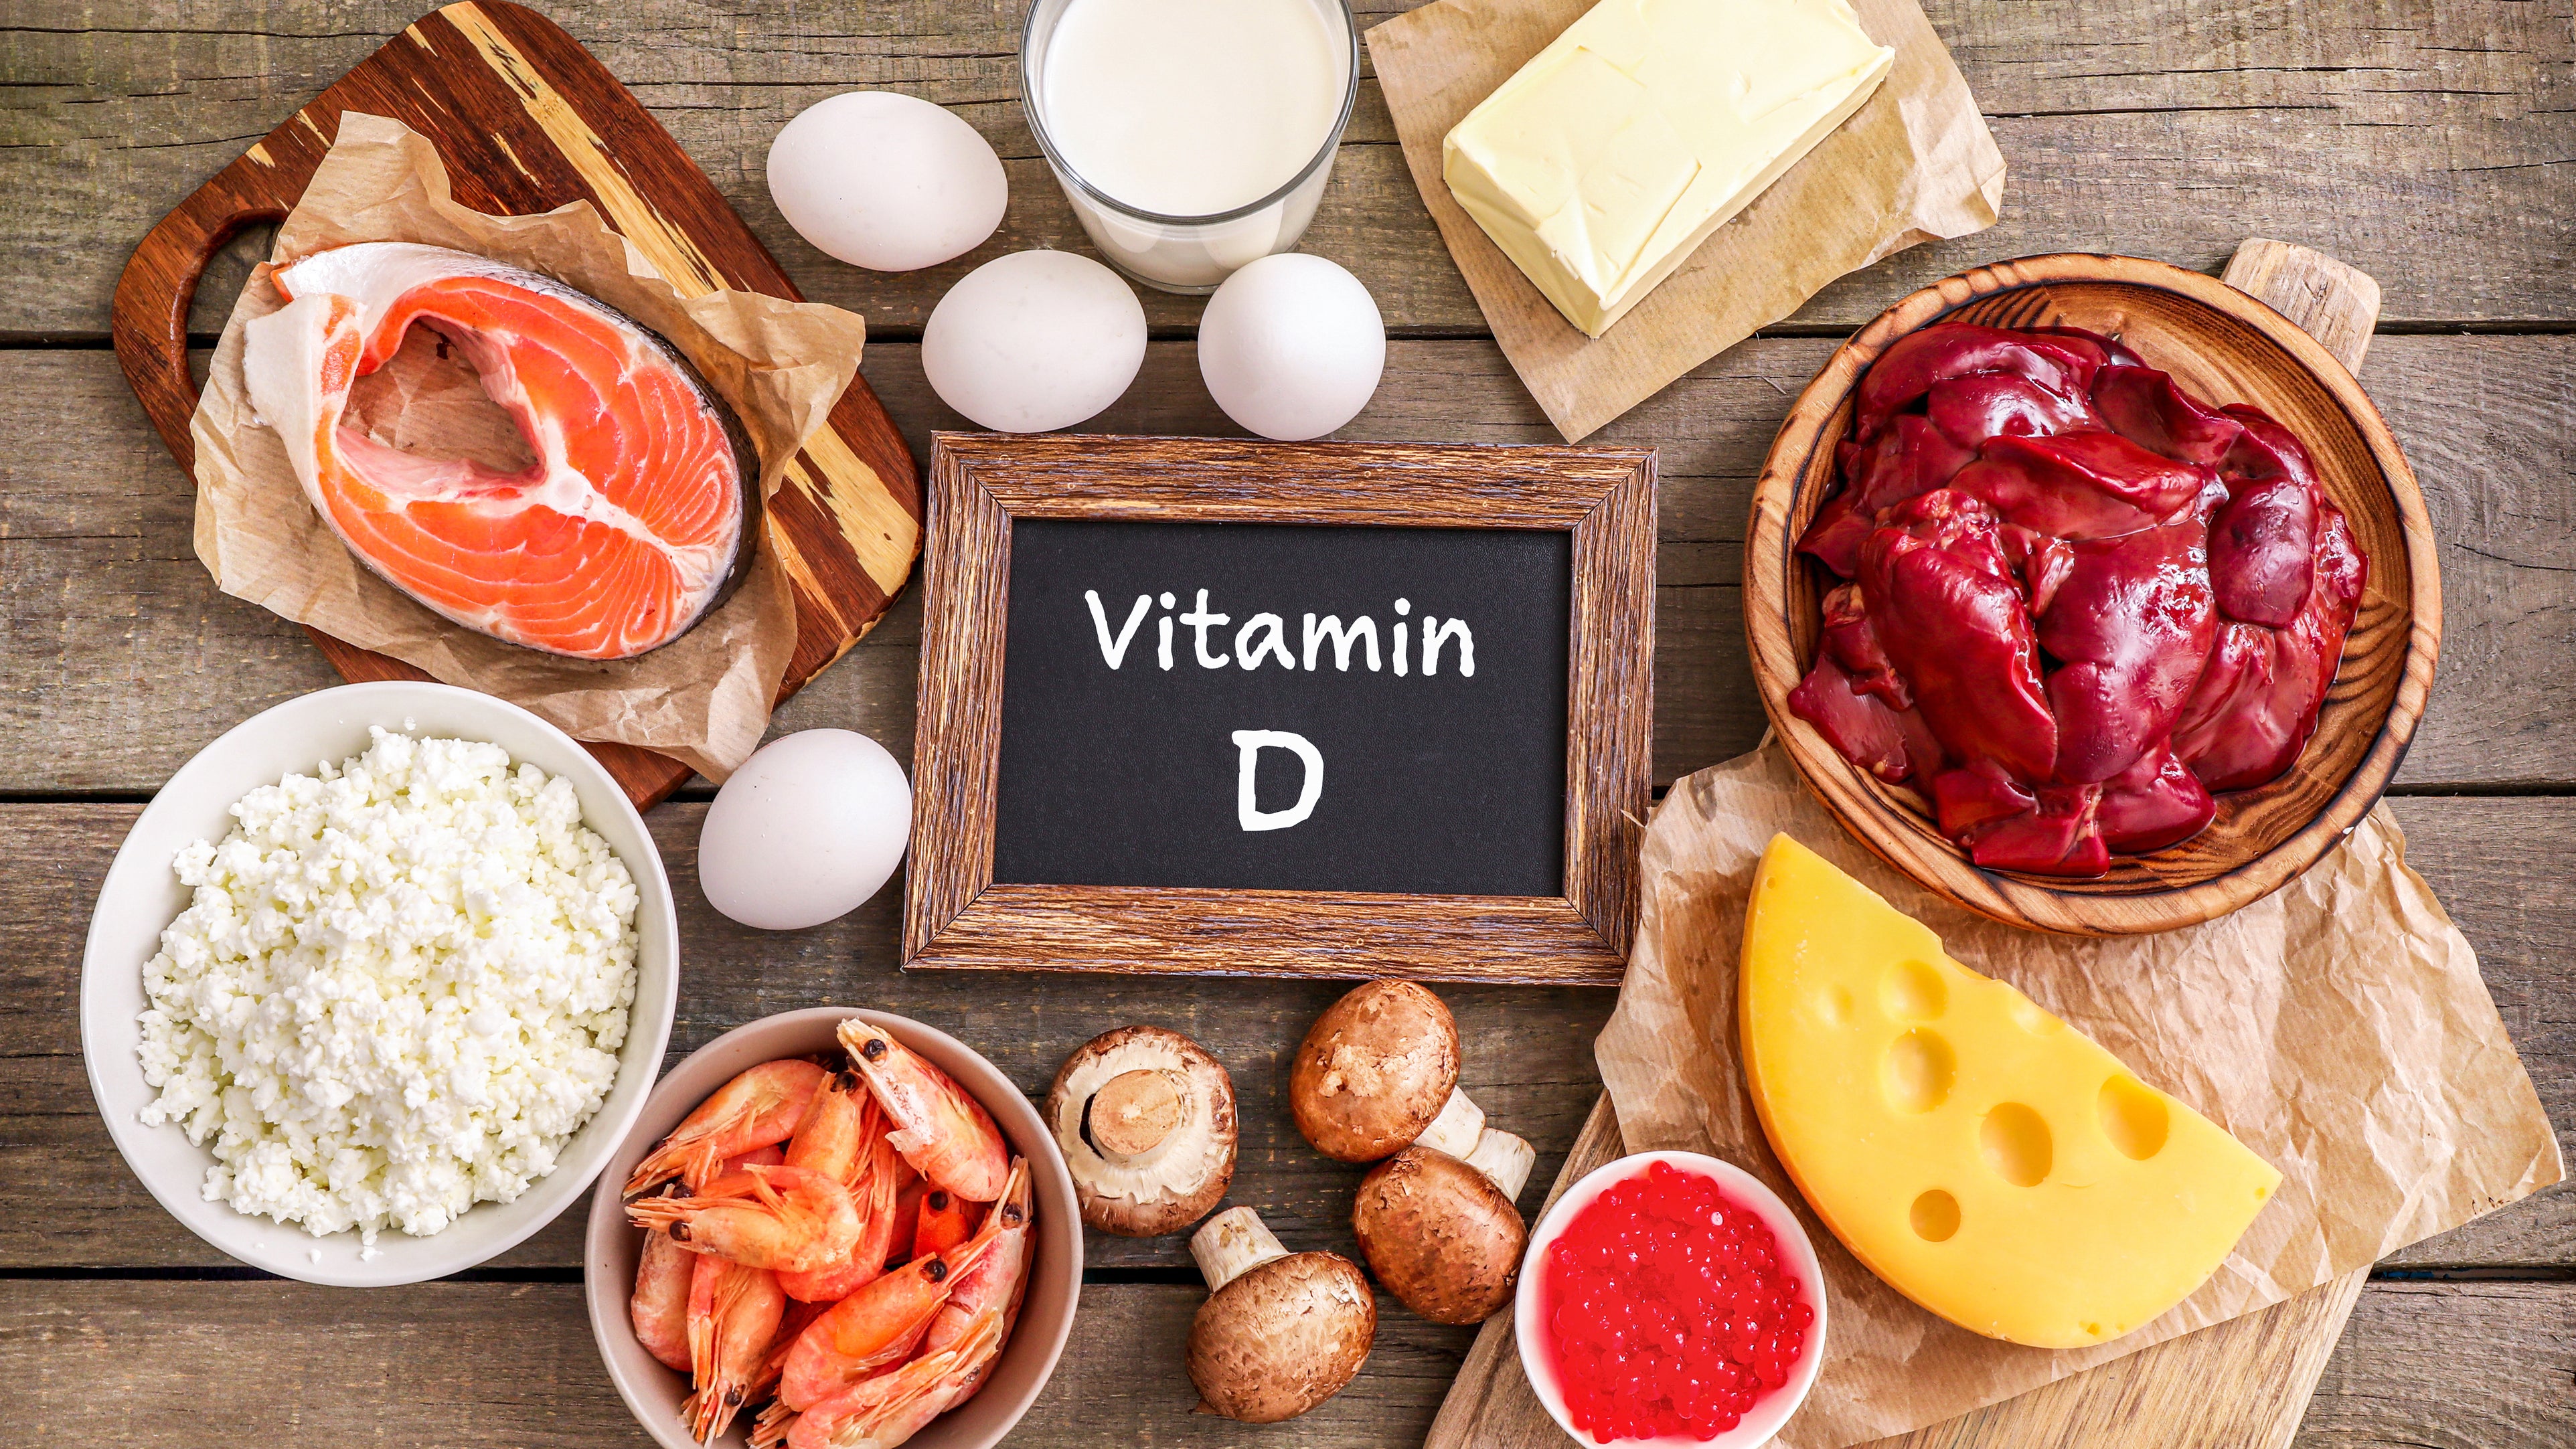 Vitamin D की कमी से COVID-19 से उबरने में लग सकता है ज्यादा समय-Vitamin D deficiency may take longer to recover from COVID-19